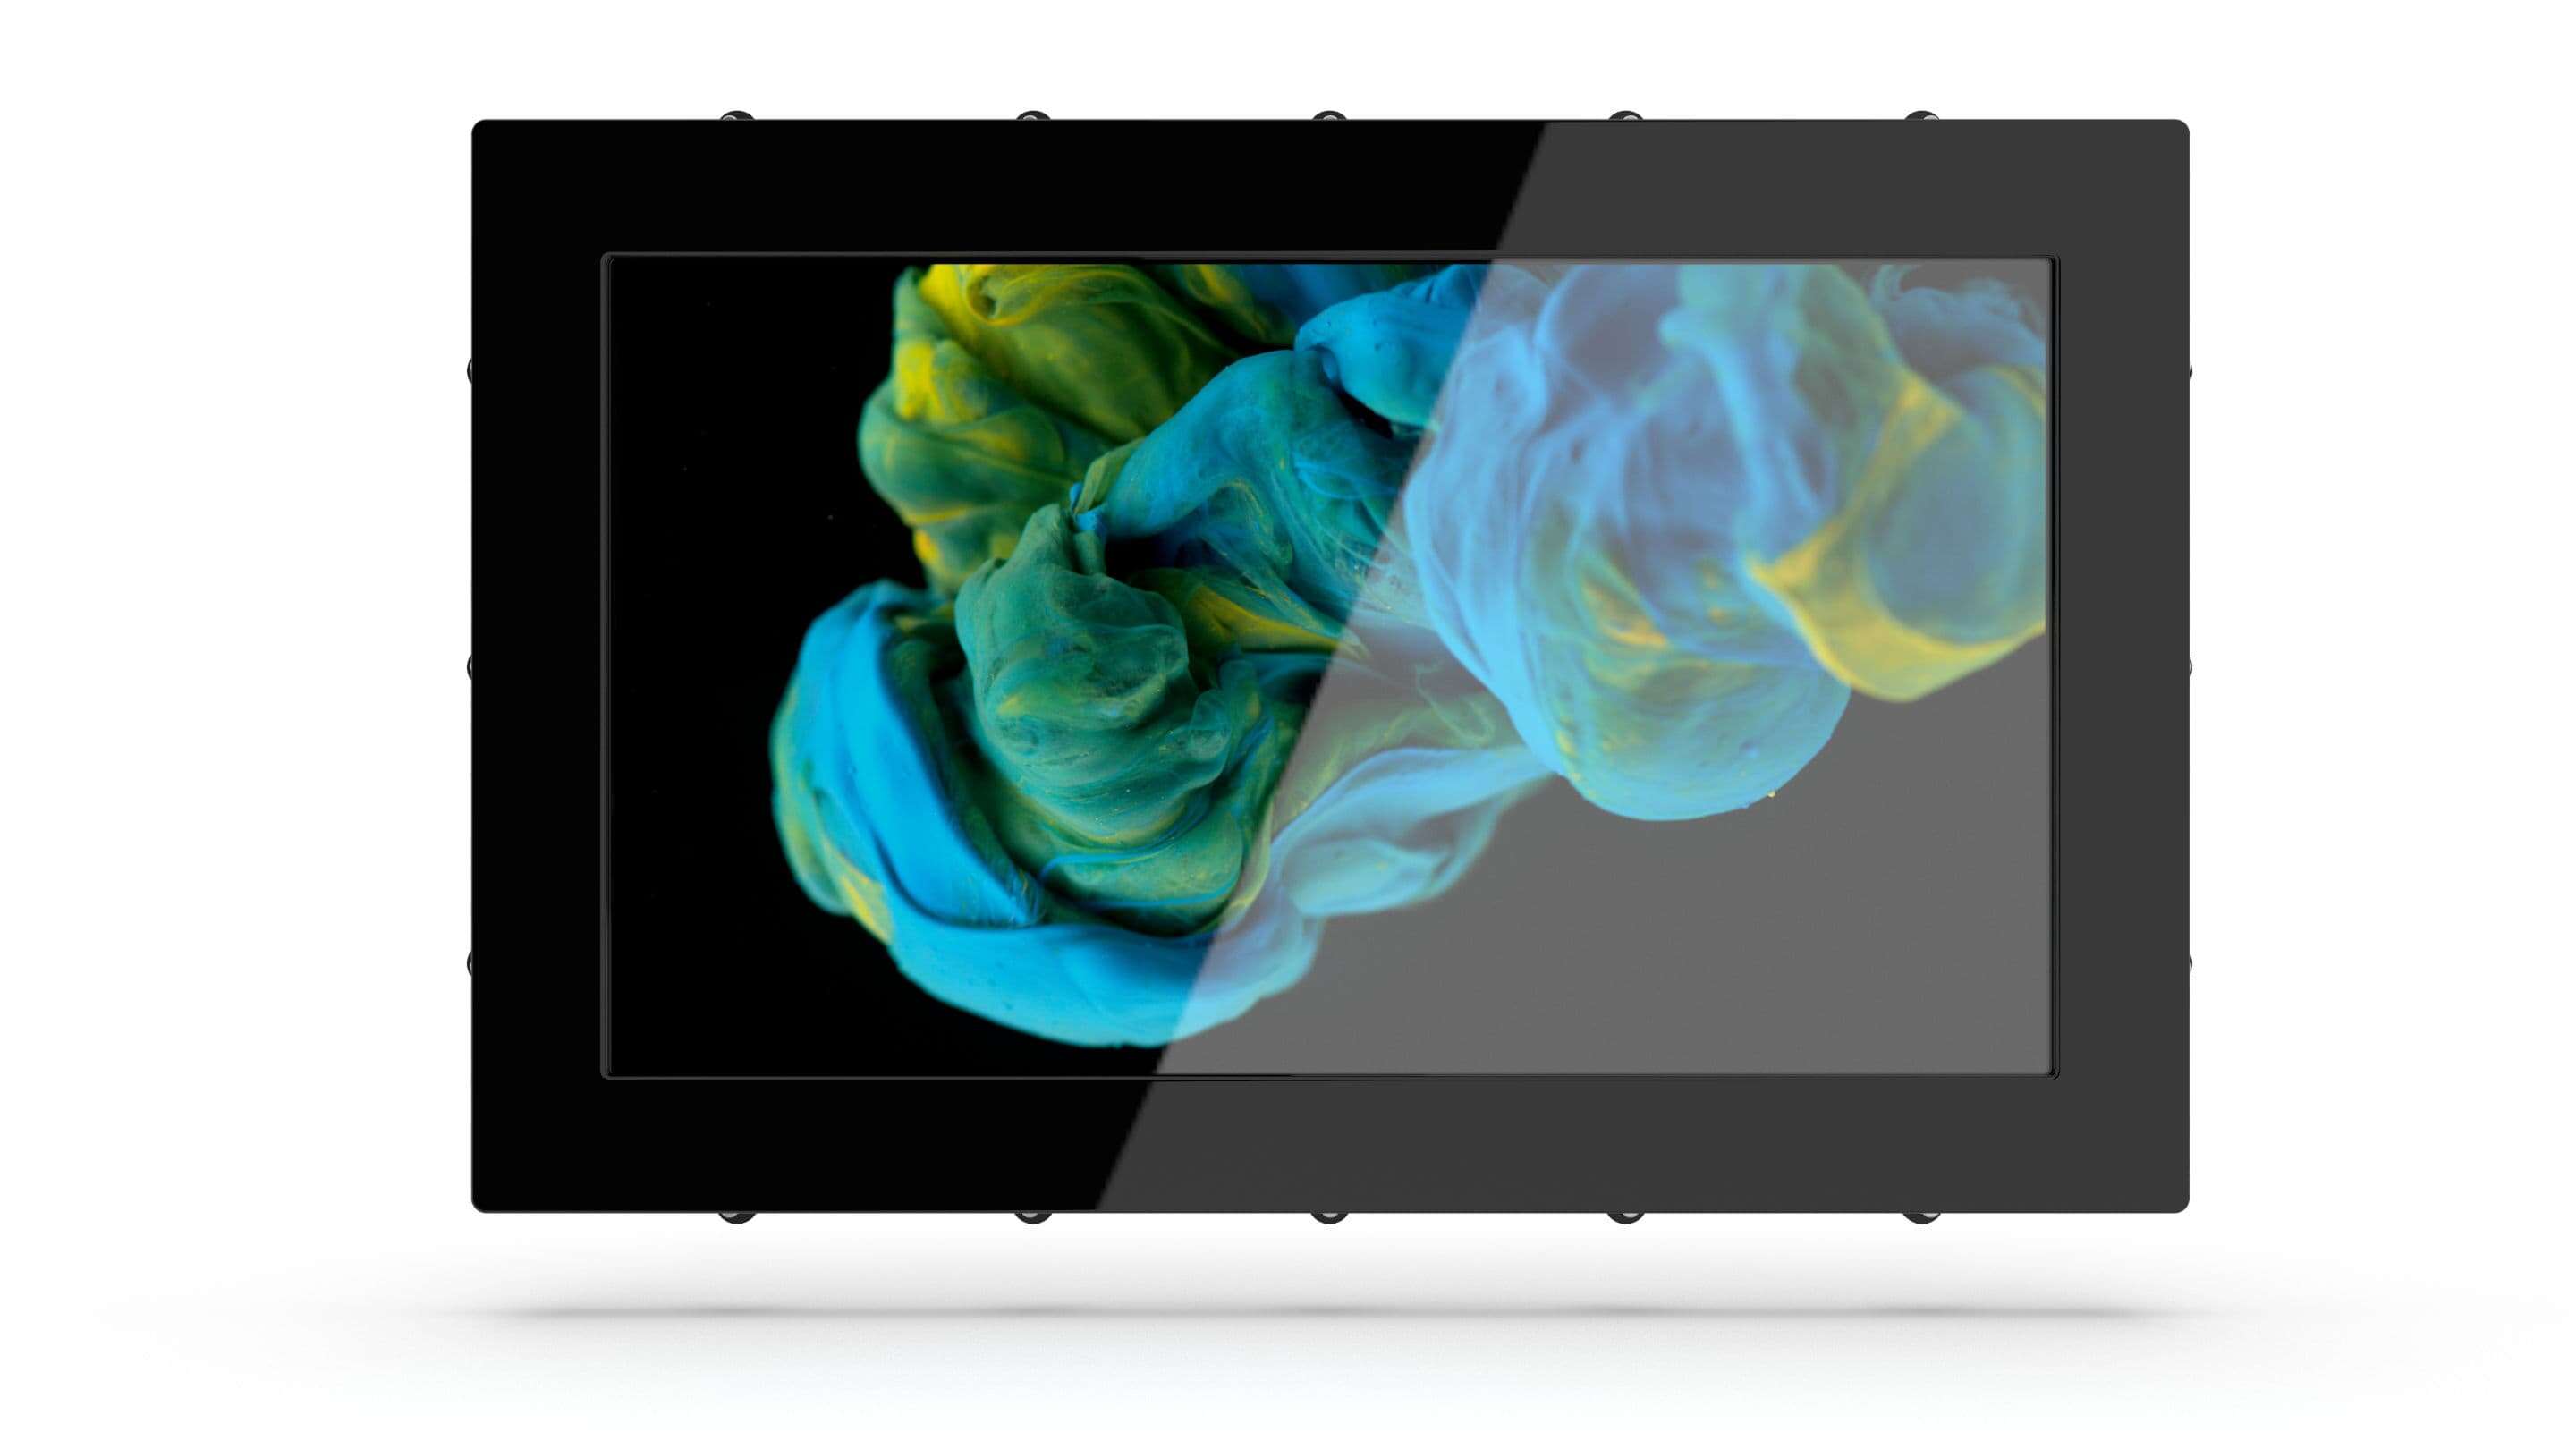 Monitor Industrial - Monitor Industrial um tablet preto com uma tela mostrando tinta azul e amarela